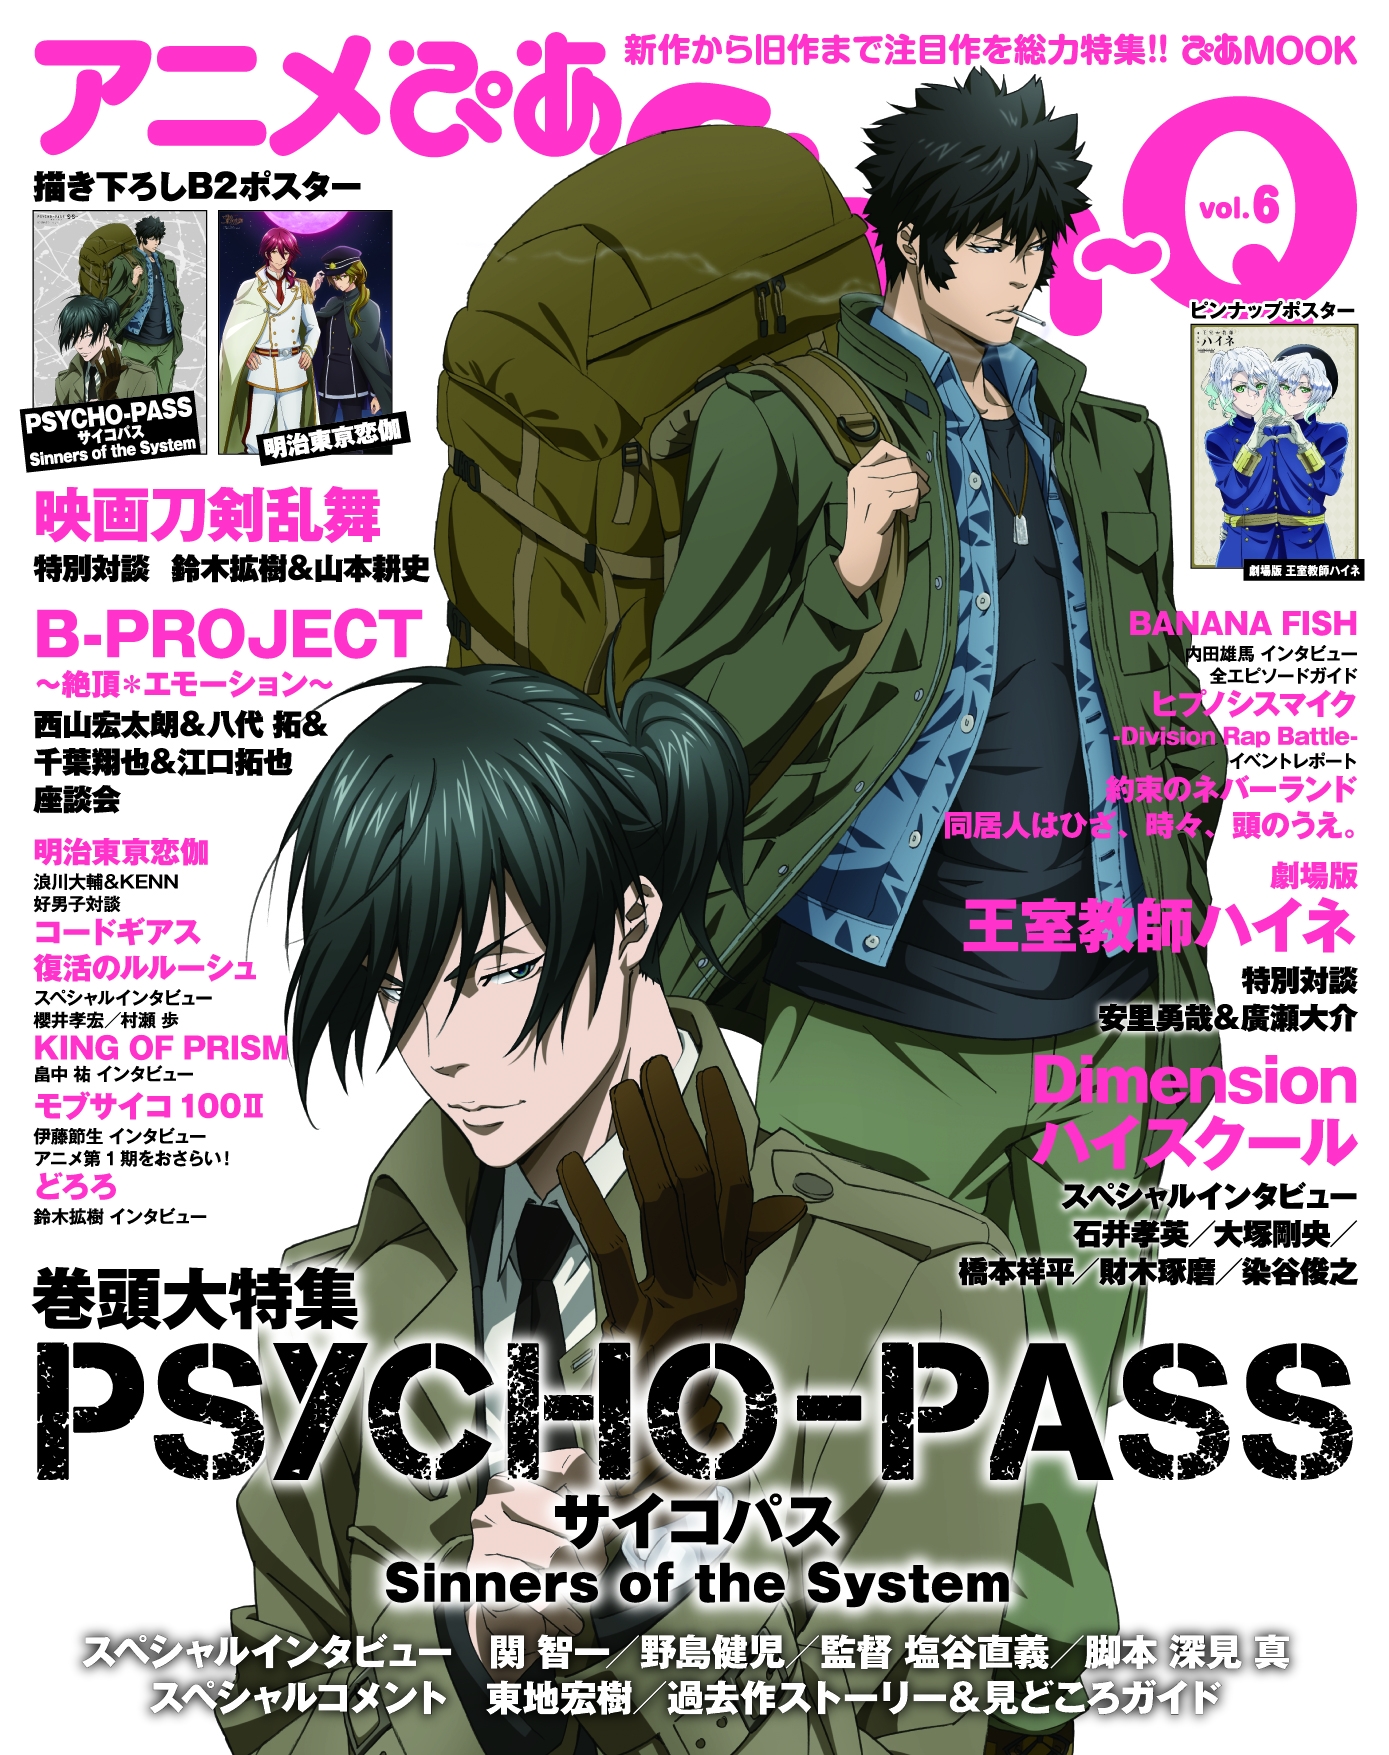 アニメぴあ Shin Q Vol 6 表紙発表 Psycho Pass サイコパス Sinners Of The System アニメイト特典は表紙クリアファイル ぴあ株式会社のプレスリリース